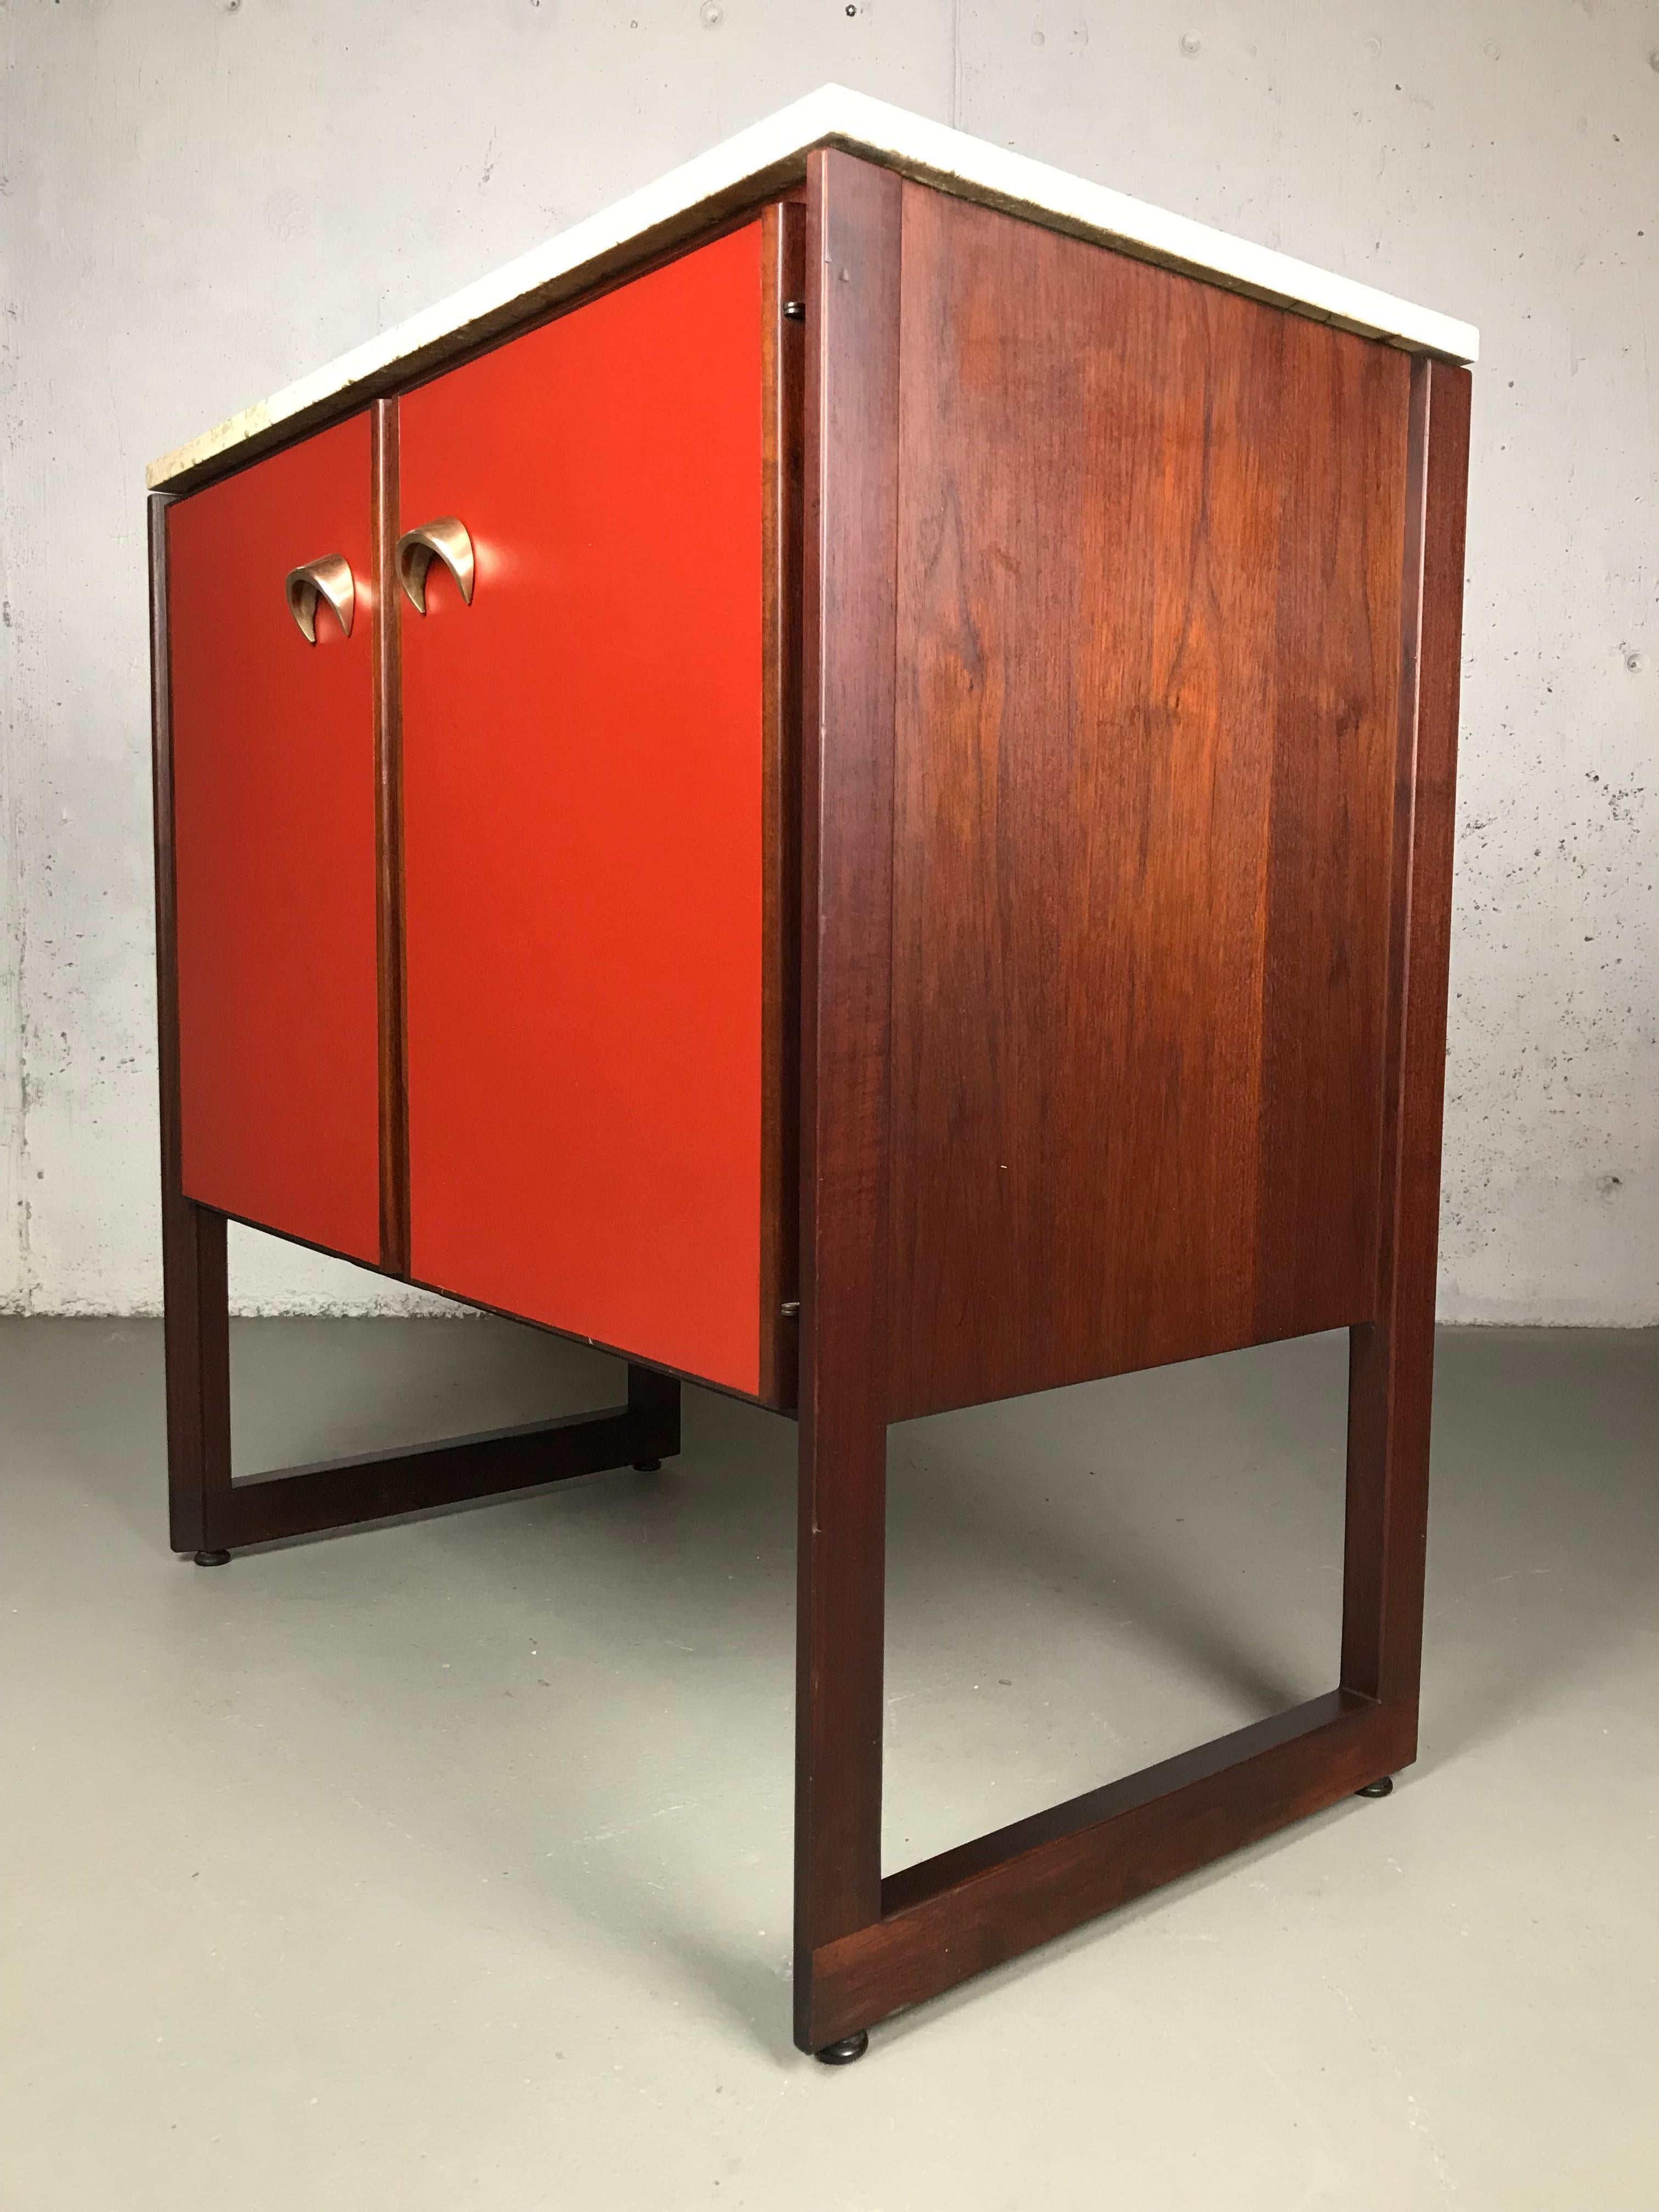 Ein wunderbares Beispiel für den amerikanischen Modernismus von Jens Risom. Dieser Schrank besteht aus einer wunderbaren Kombination kontrastreicher Materialien: Nussbaum, Palisander, Travertinmarmor, rotes Vinyl und Messing. Rosenholz wird für die